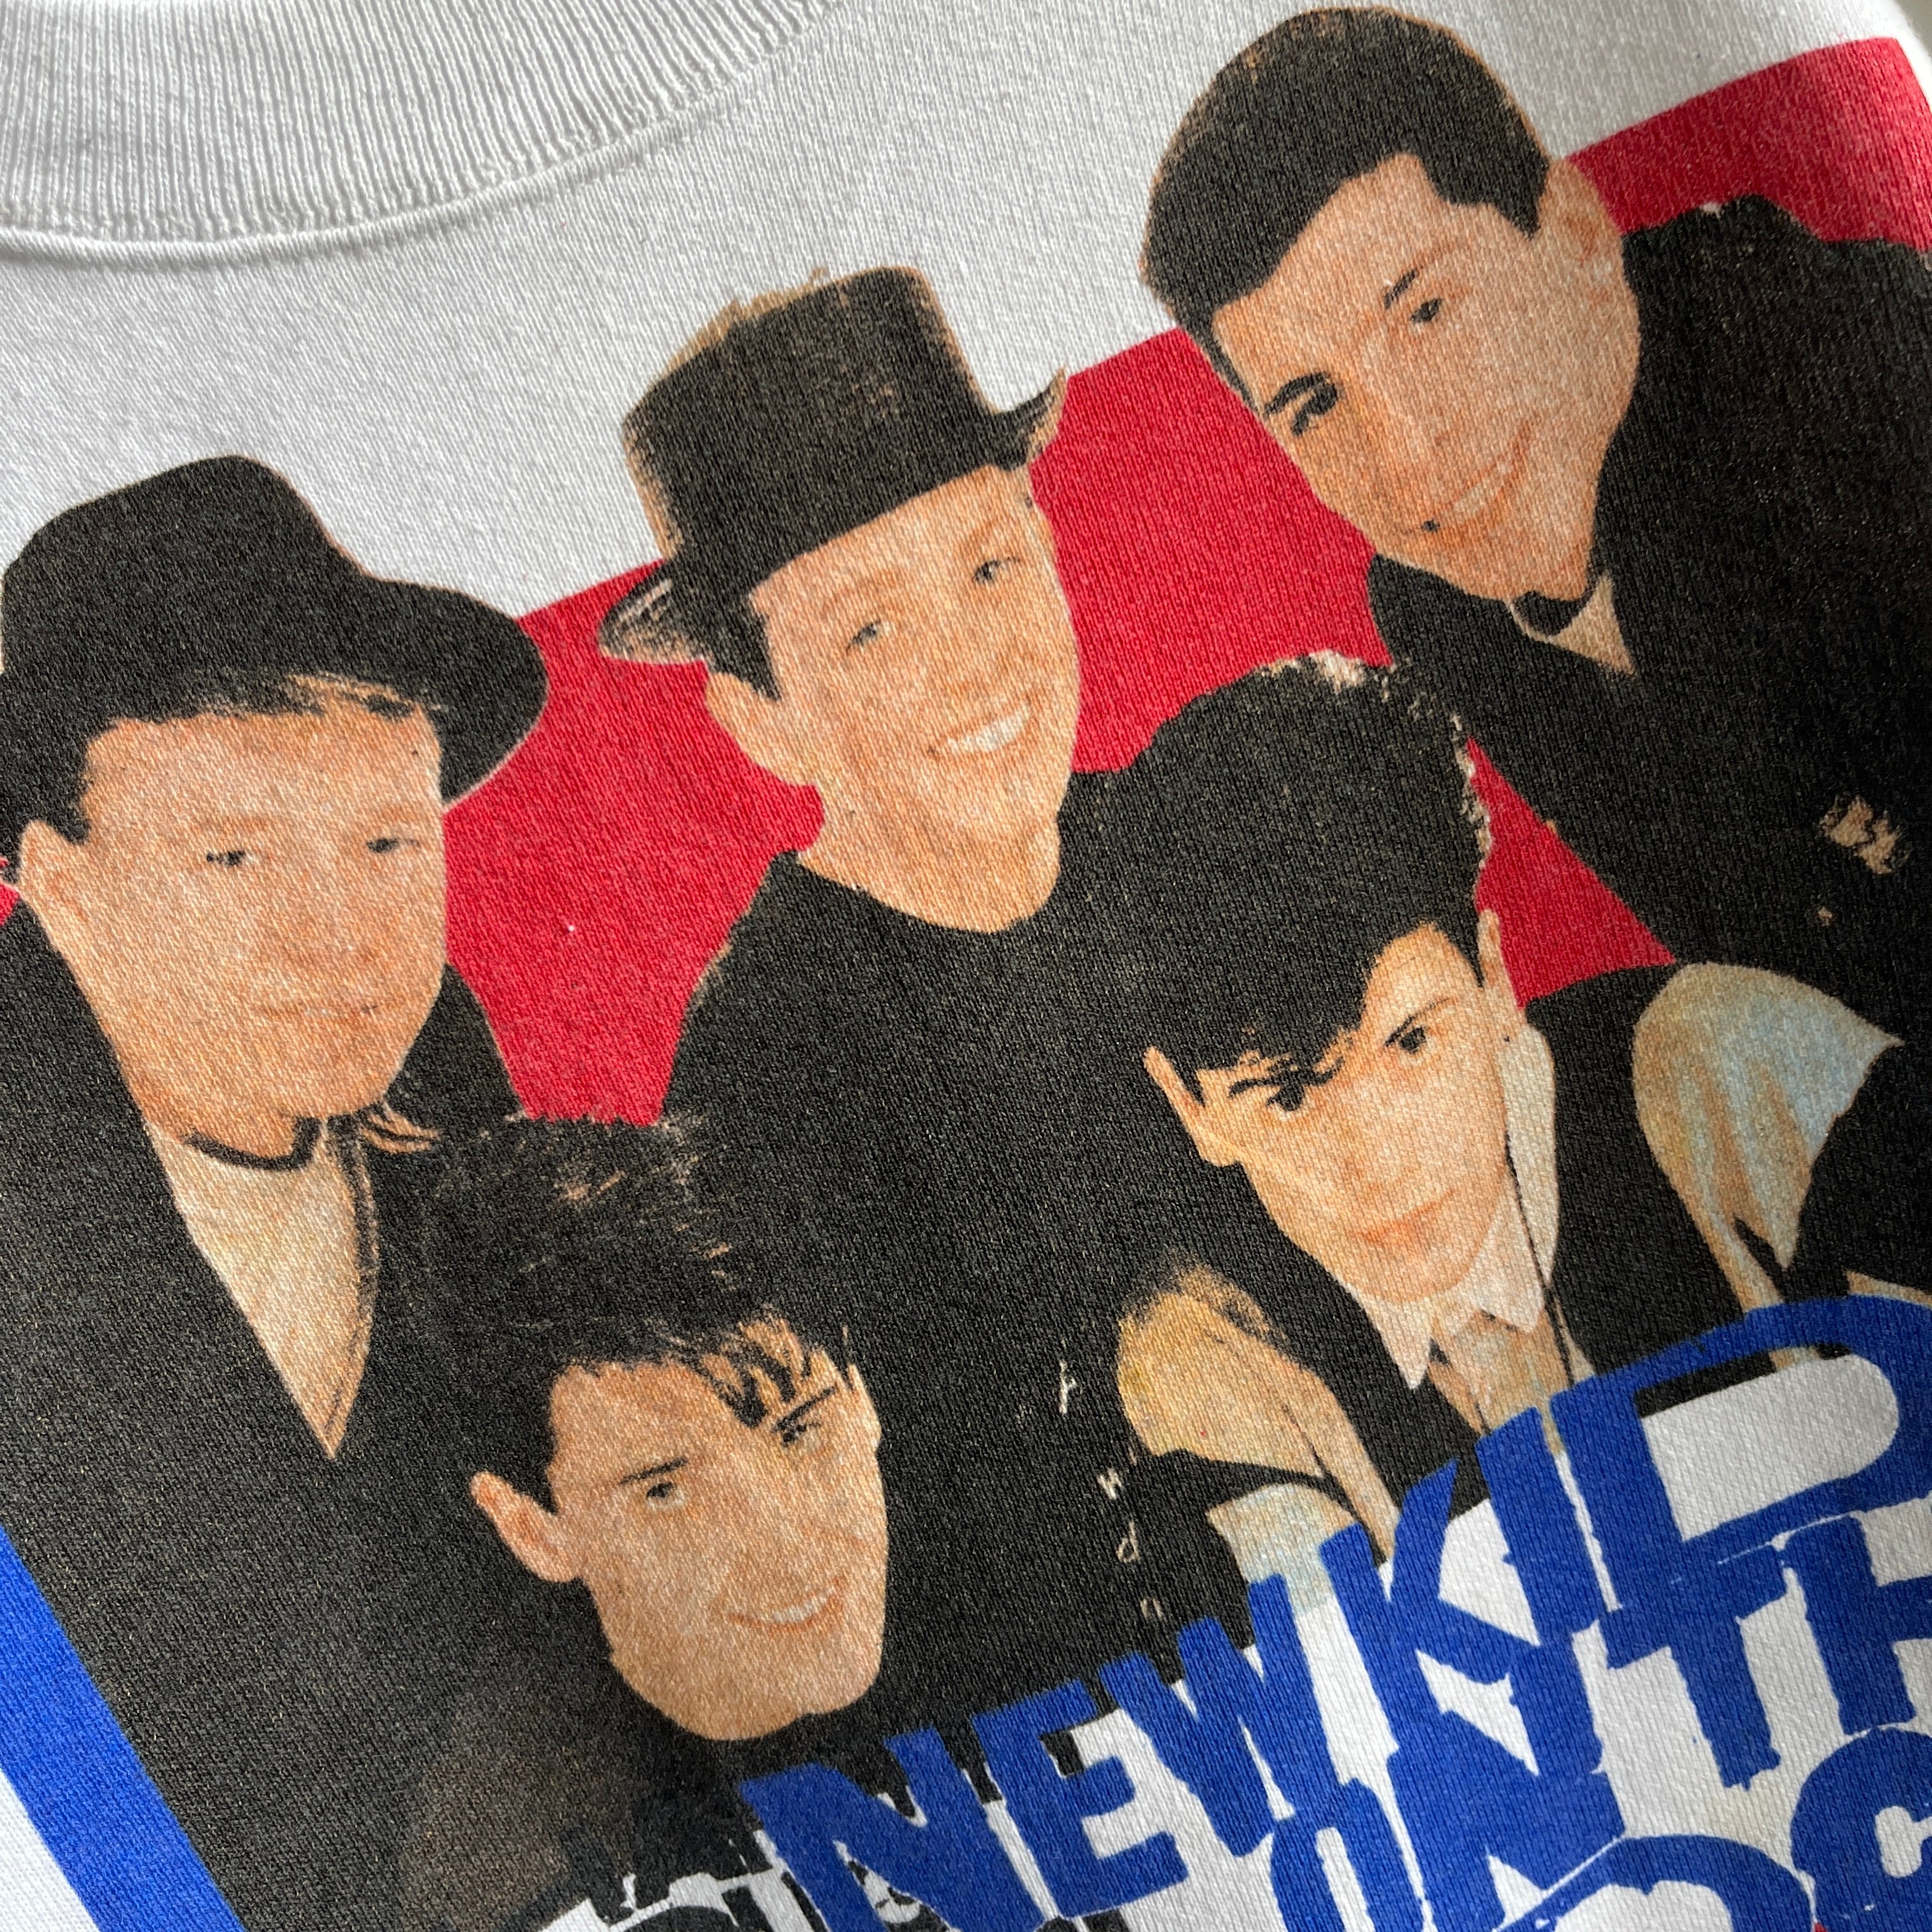 1989 New Kids On The Block Sweatshirt by FOTL